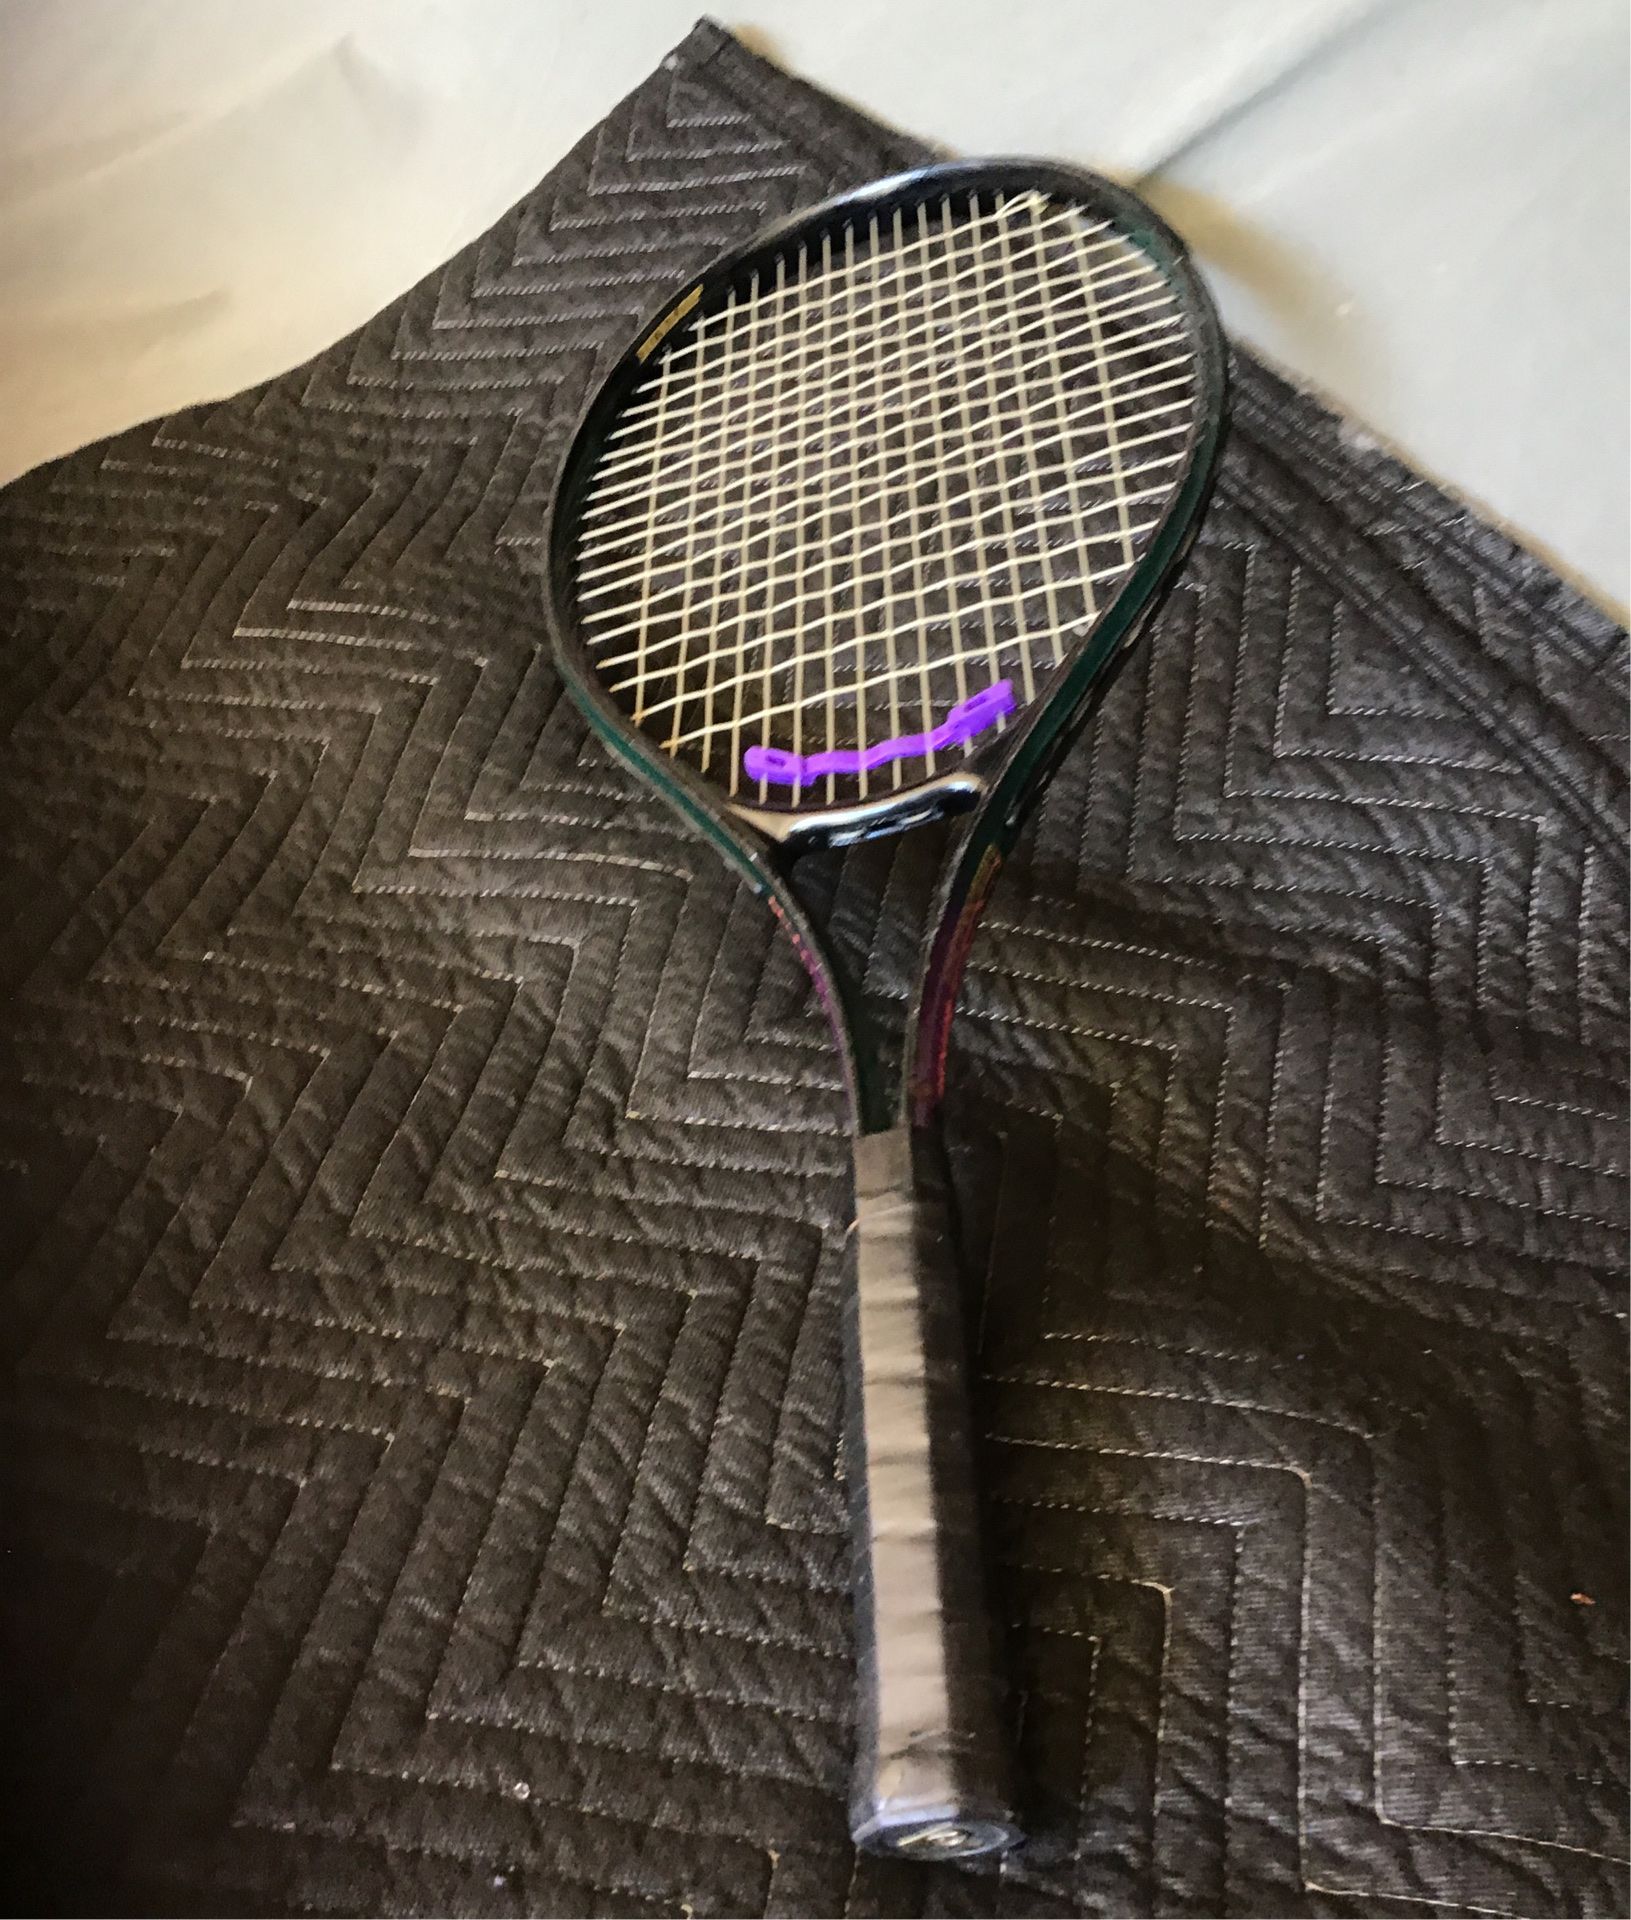 Dunlop power flex oversize tennis racket